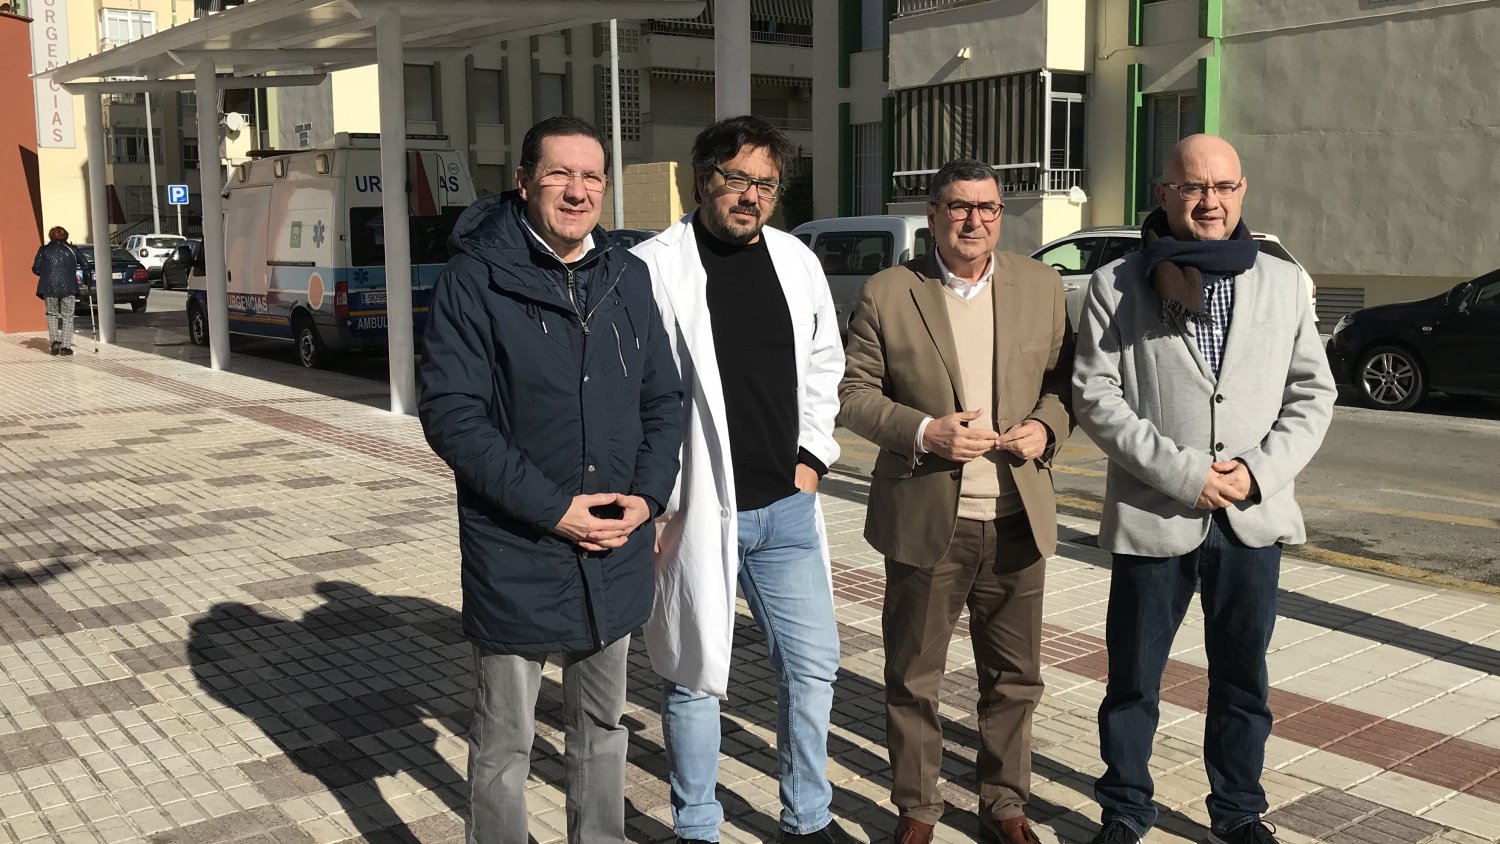 Continúan las mejoras en infraestructuras y servicios municipales por toda Vélez-Málaga